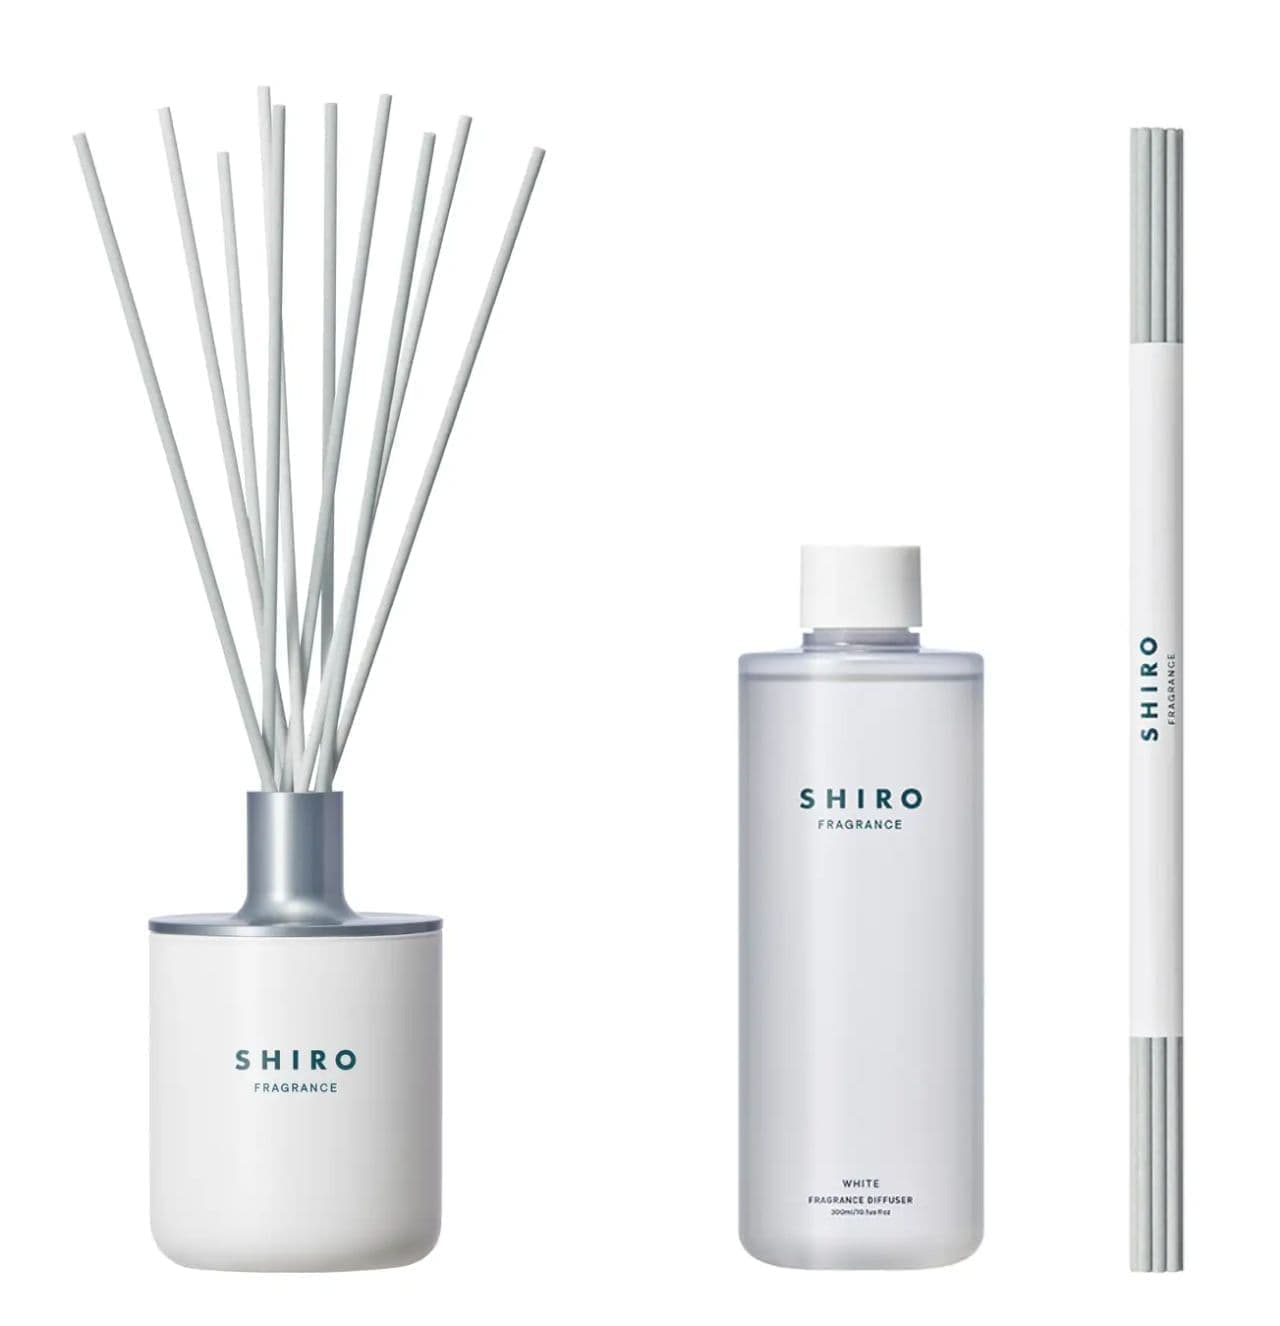 SHIRO "White Fragrance Diffuser Liquid"